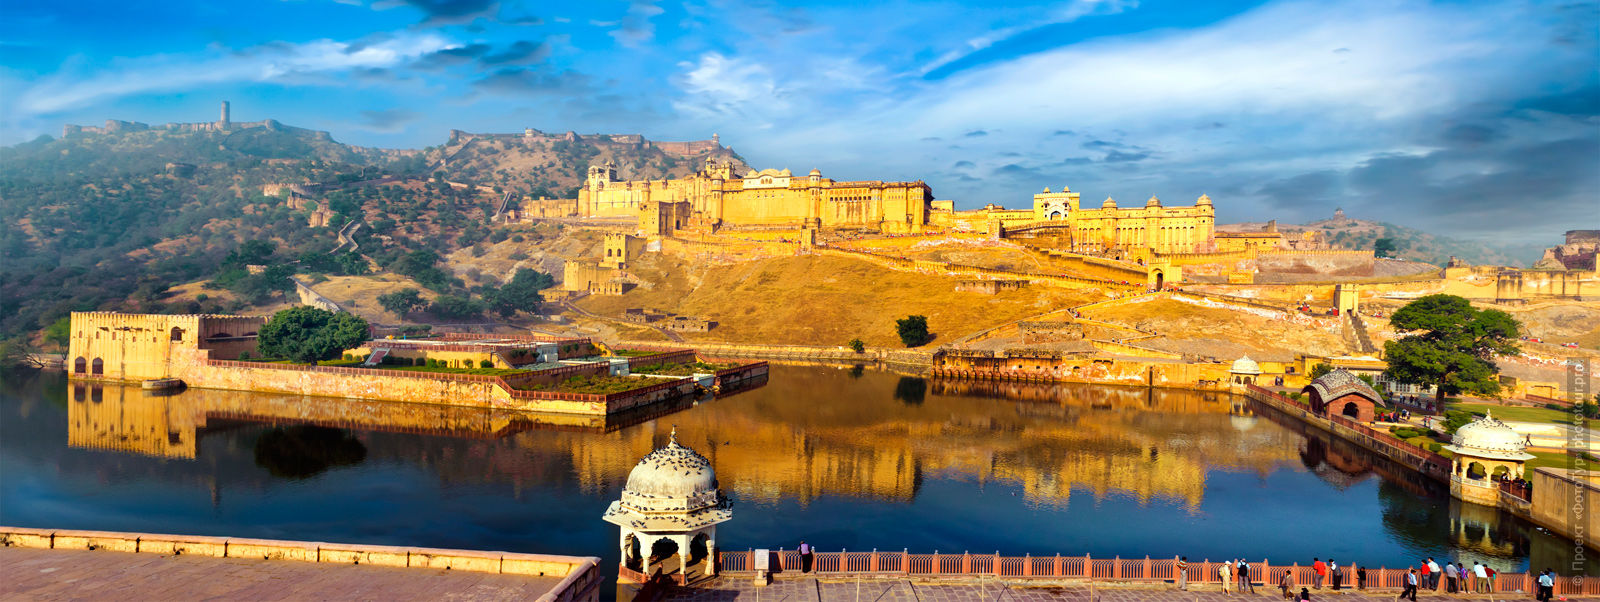 Джайпур, форт Амбер, тур по Золотому Треугольнику Индии, бюджетные туры в Индию, 2017 год.